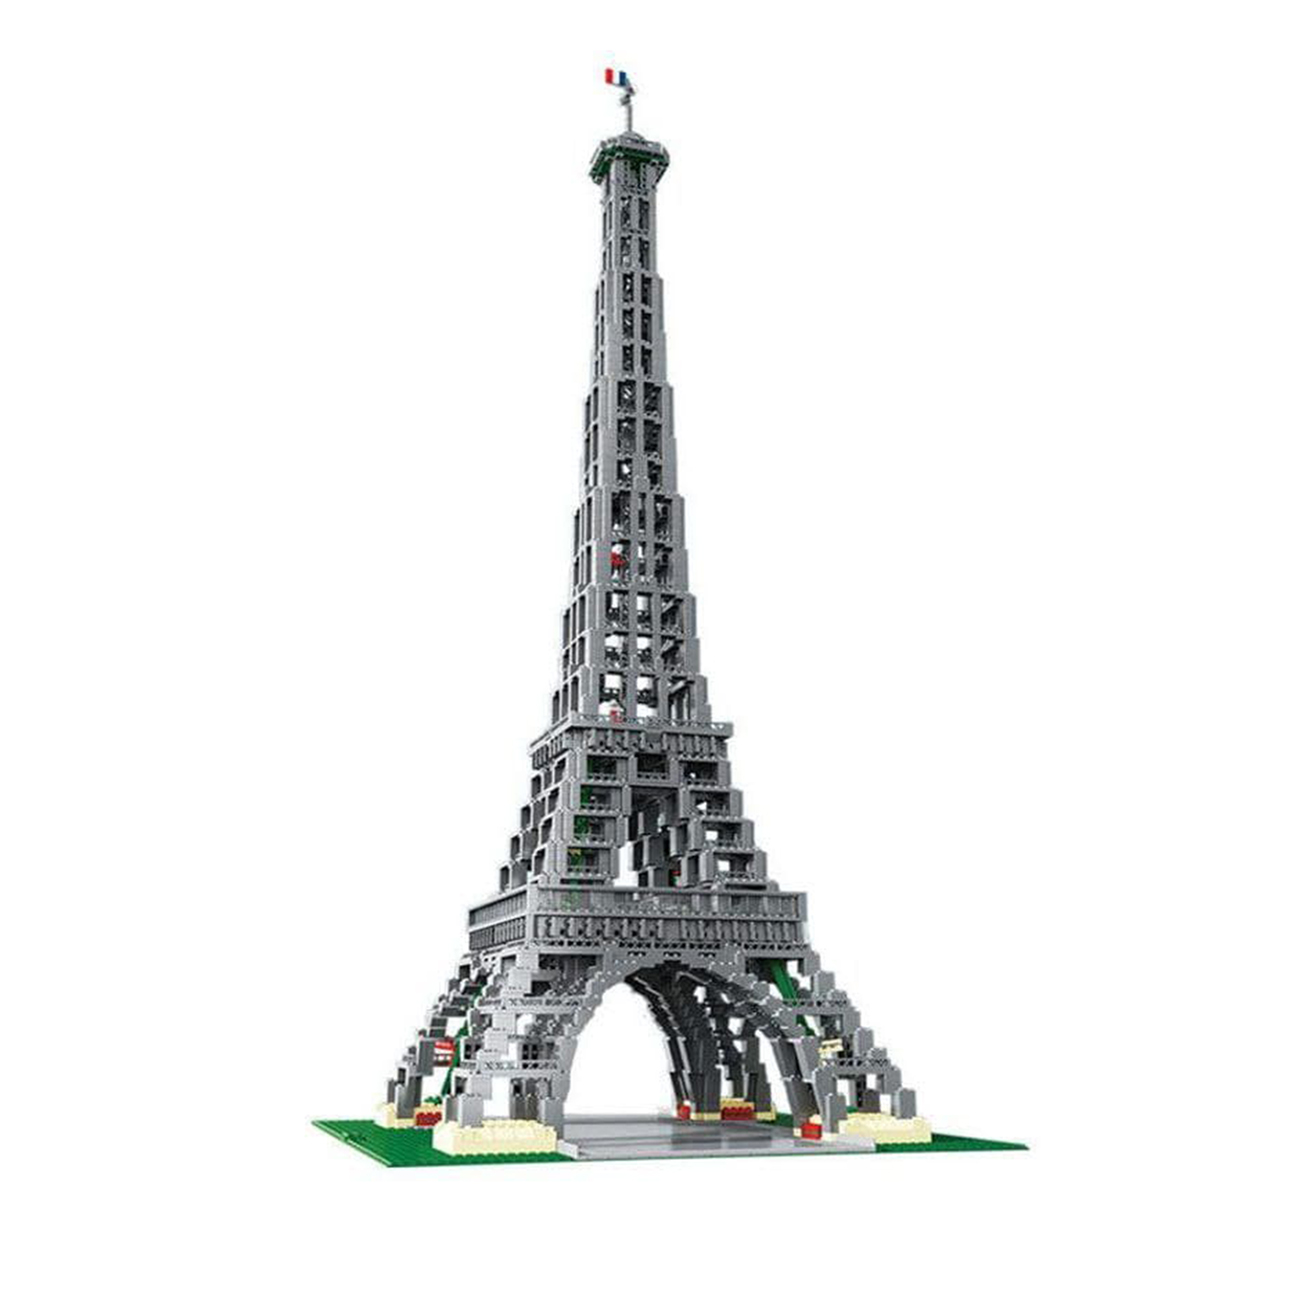 ساختنی لپین مدل برج ایفل کد 17002